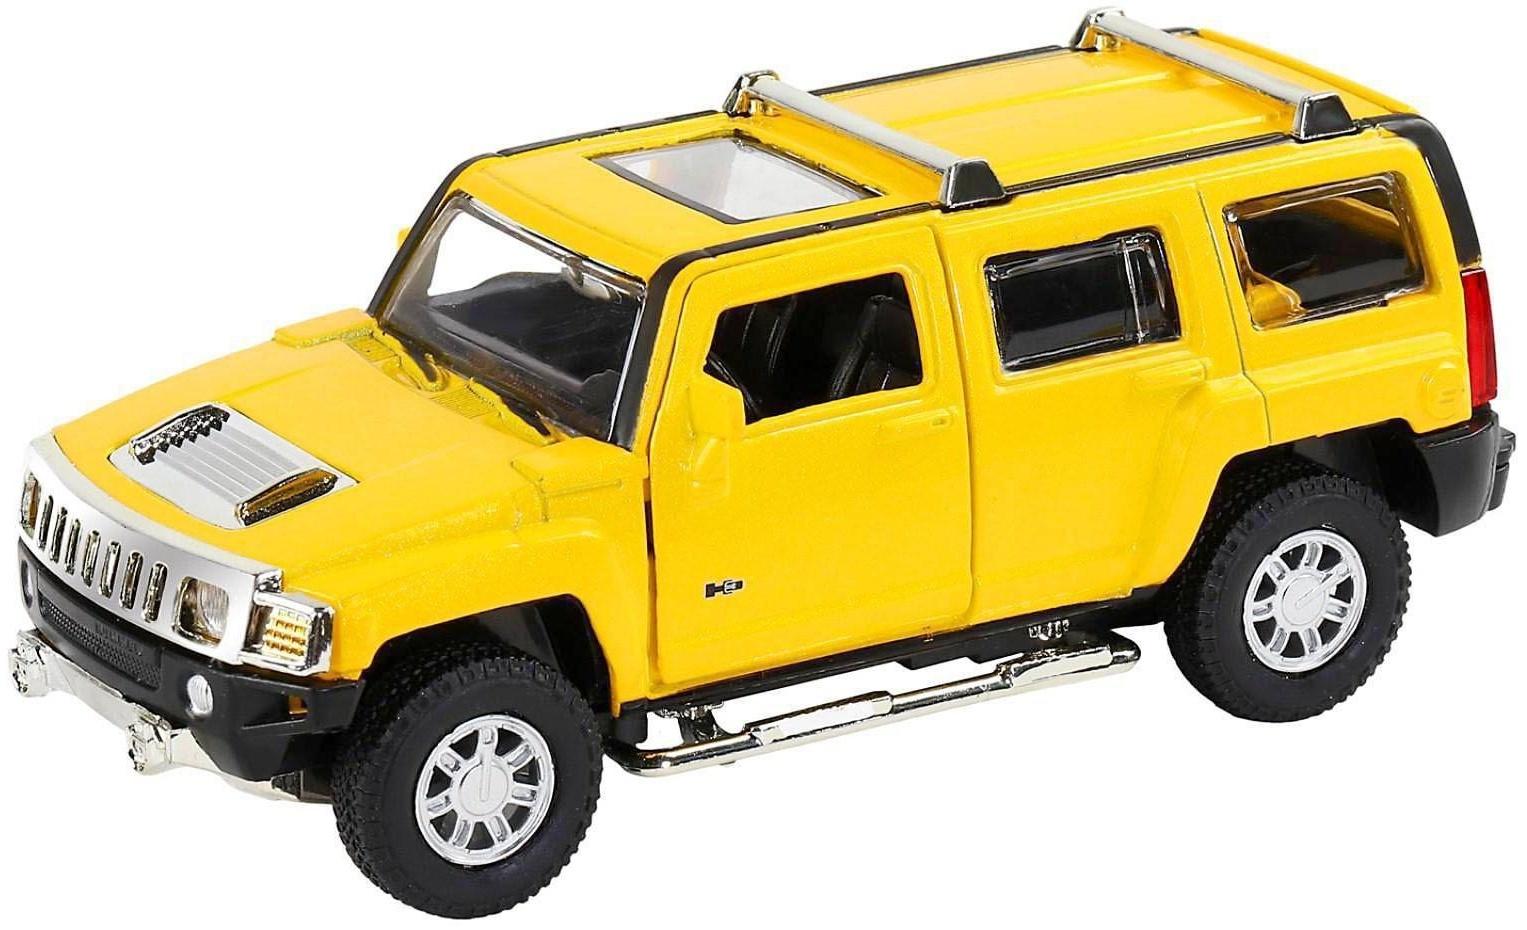 Машина металлическая Hummer H3 1:32 цвет жёлтый инерция, световые и звуковые эффекты, открываются двери